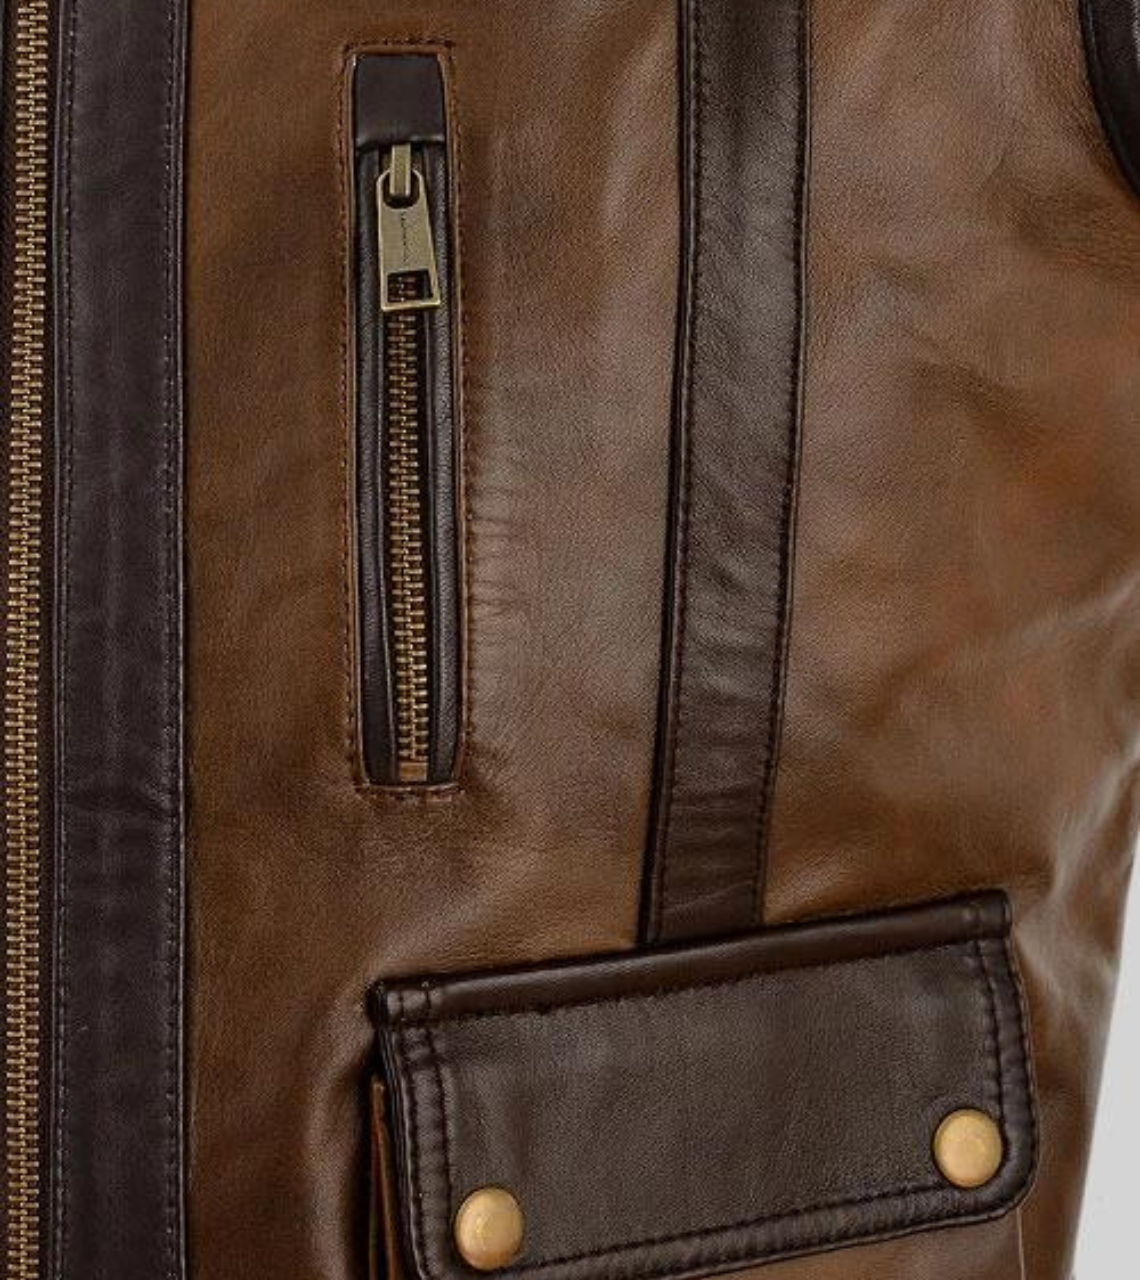  Roscode Men's Brown Leather Vest Pocket